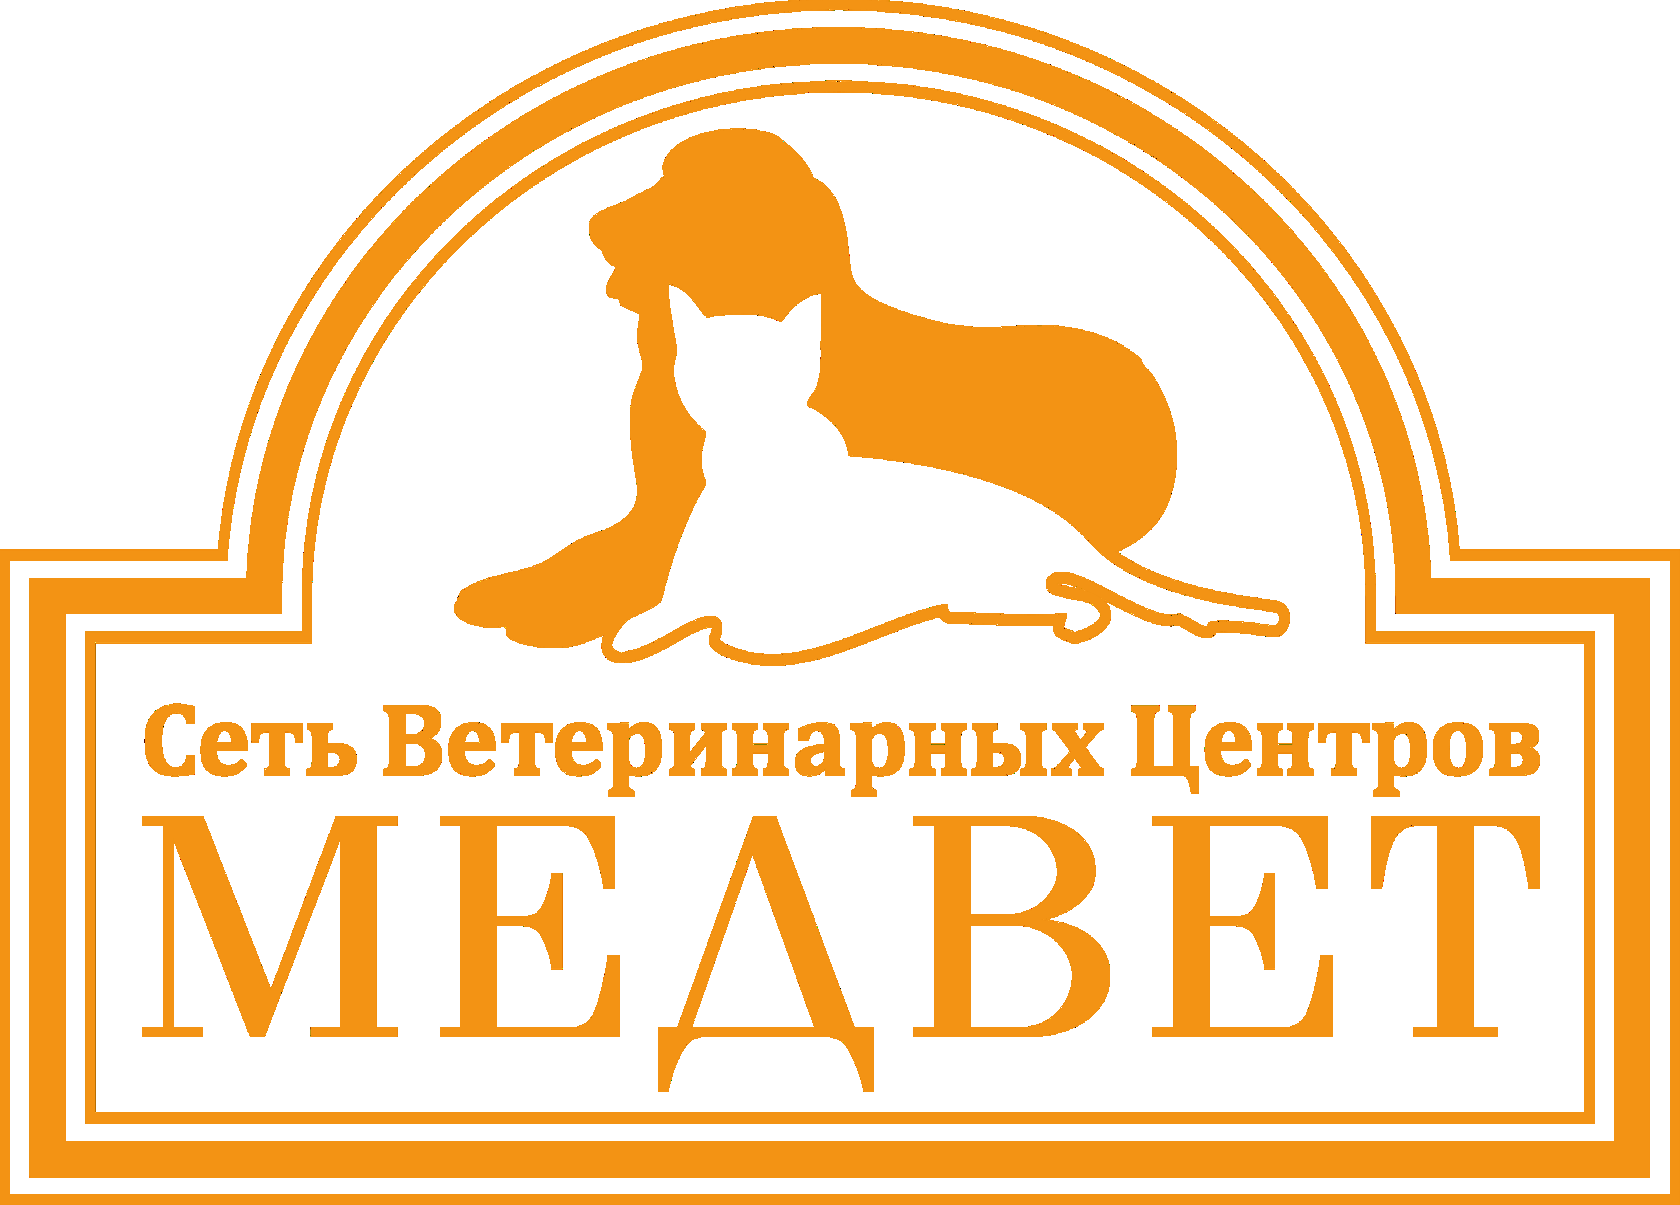 Медведь клиника ветеринарная Москва. МЕДВЕТ ветеринарная клиника Домодедово. Медвед Домодедово ветклиника. Логотип ветеринарной клиники.